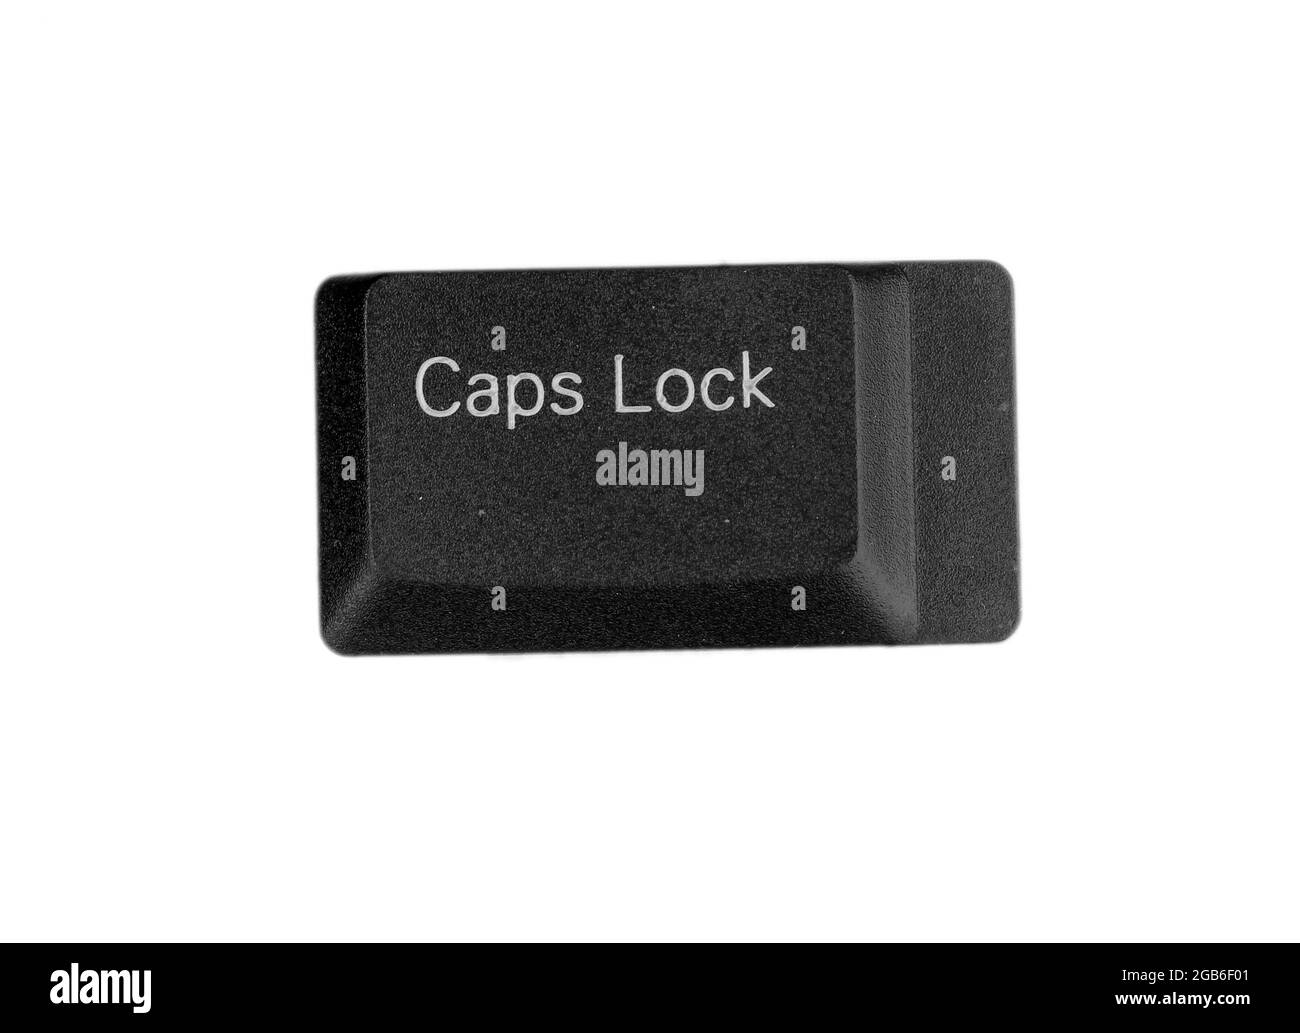 Keyboard key caps lock isolated on white Stock Photo - Alamy